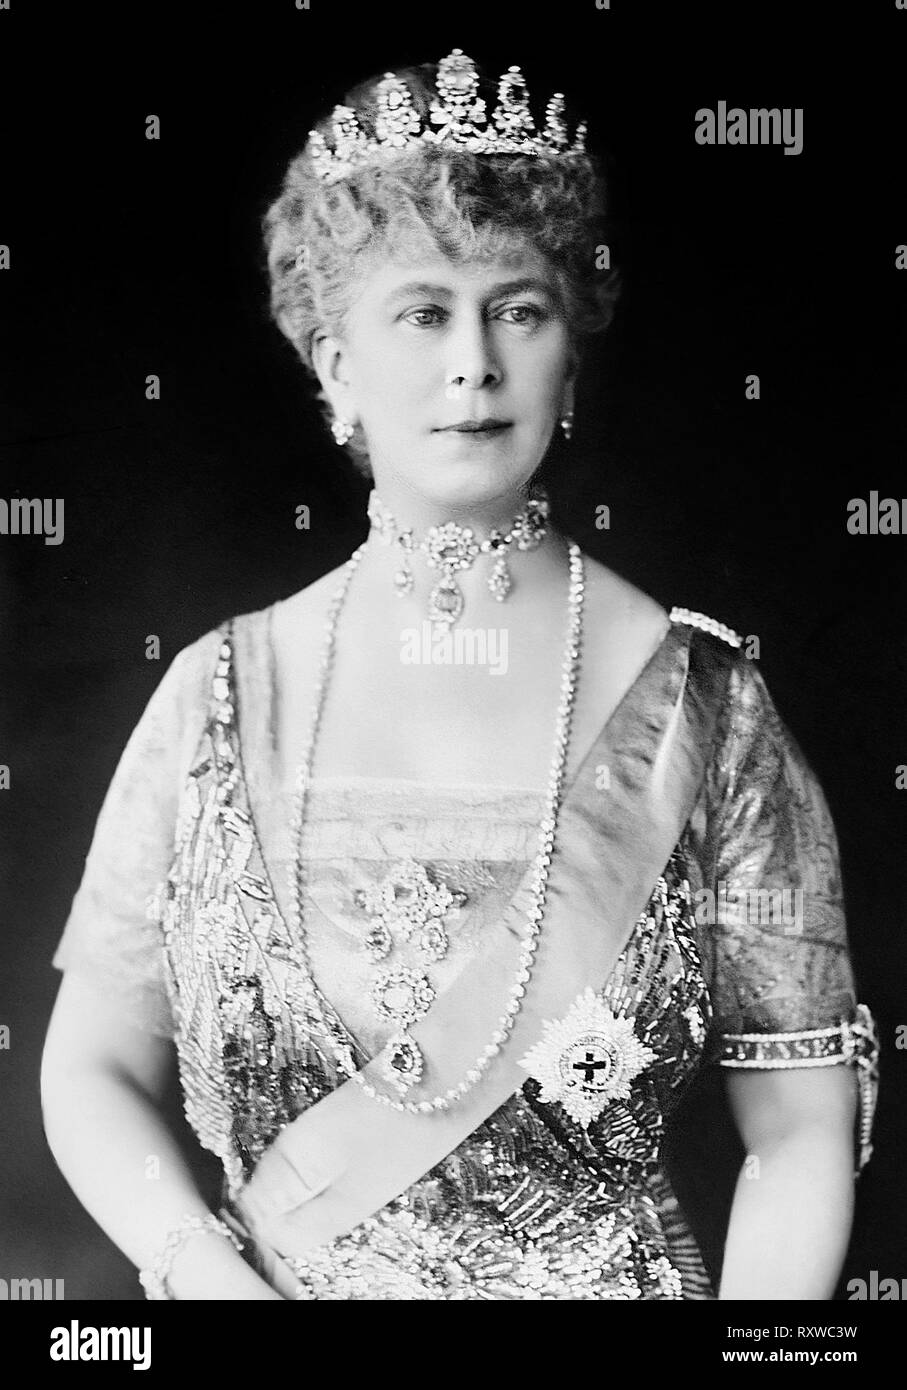 Queen Mary Tiara und Kleid trägt ein Halsband Halskette und eine Perlenkette - Maria von Teck war die Königin des Vereinigten Königreichs und Kaiserin von Indien als die Frau von George V. vor seinem Beitritt, sie wurde sukzessive Herzogin von York, Herzogin von Cornwall und der Prinzessin von Wales. Stockfoto